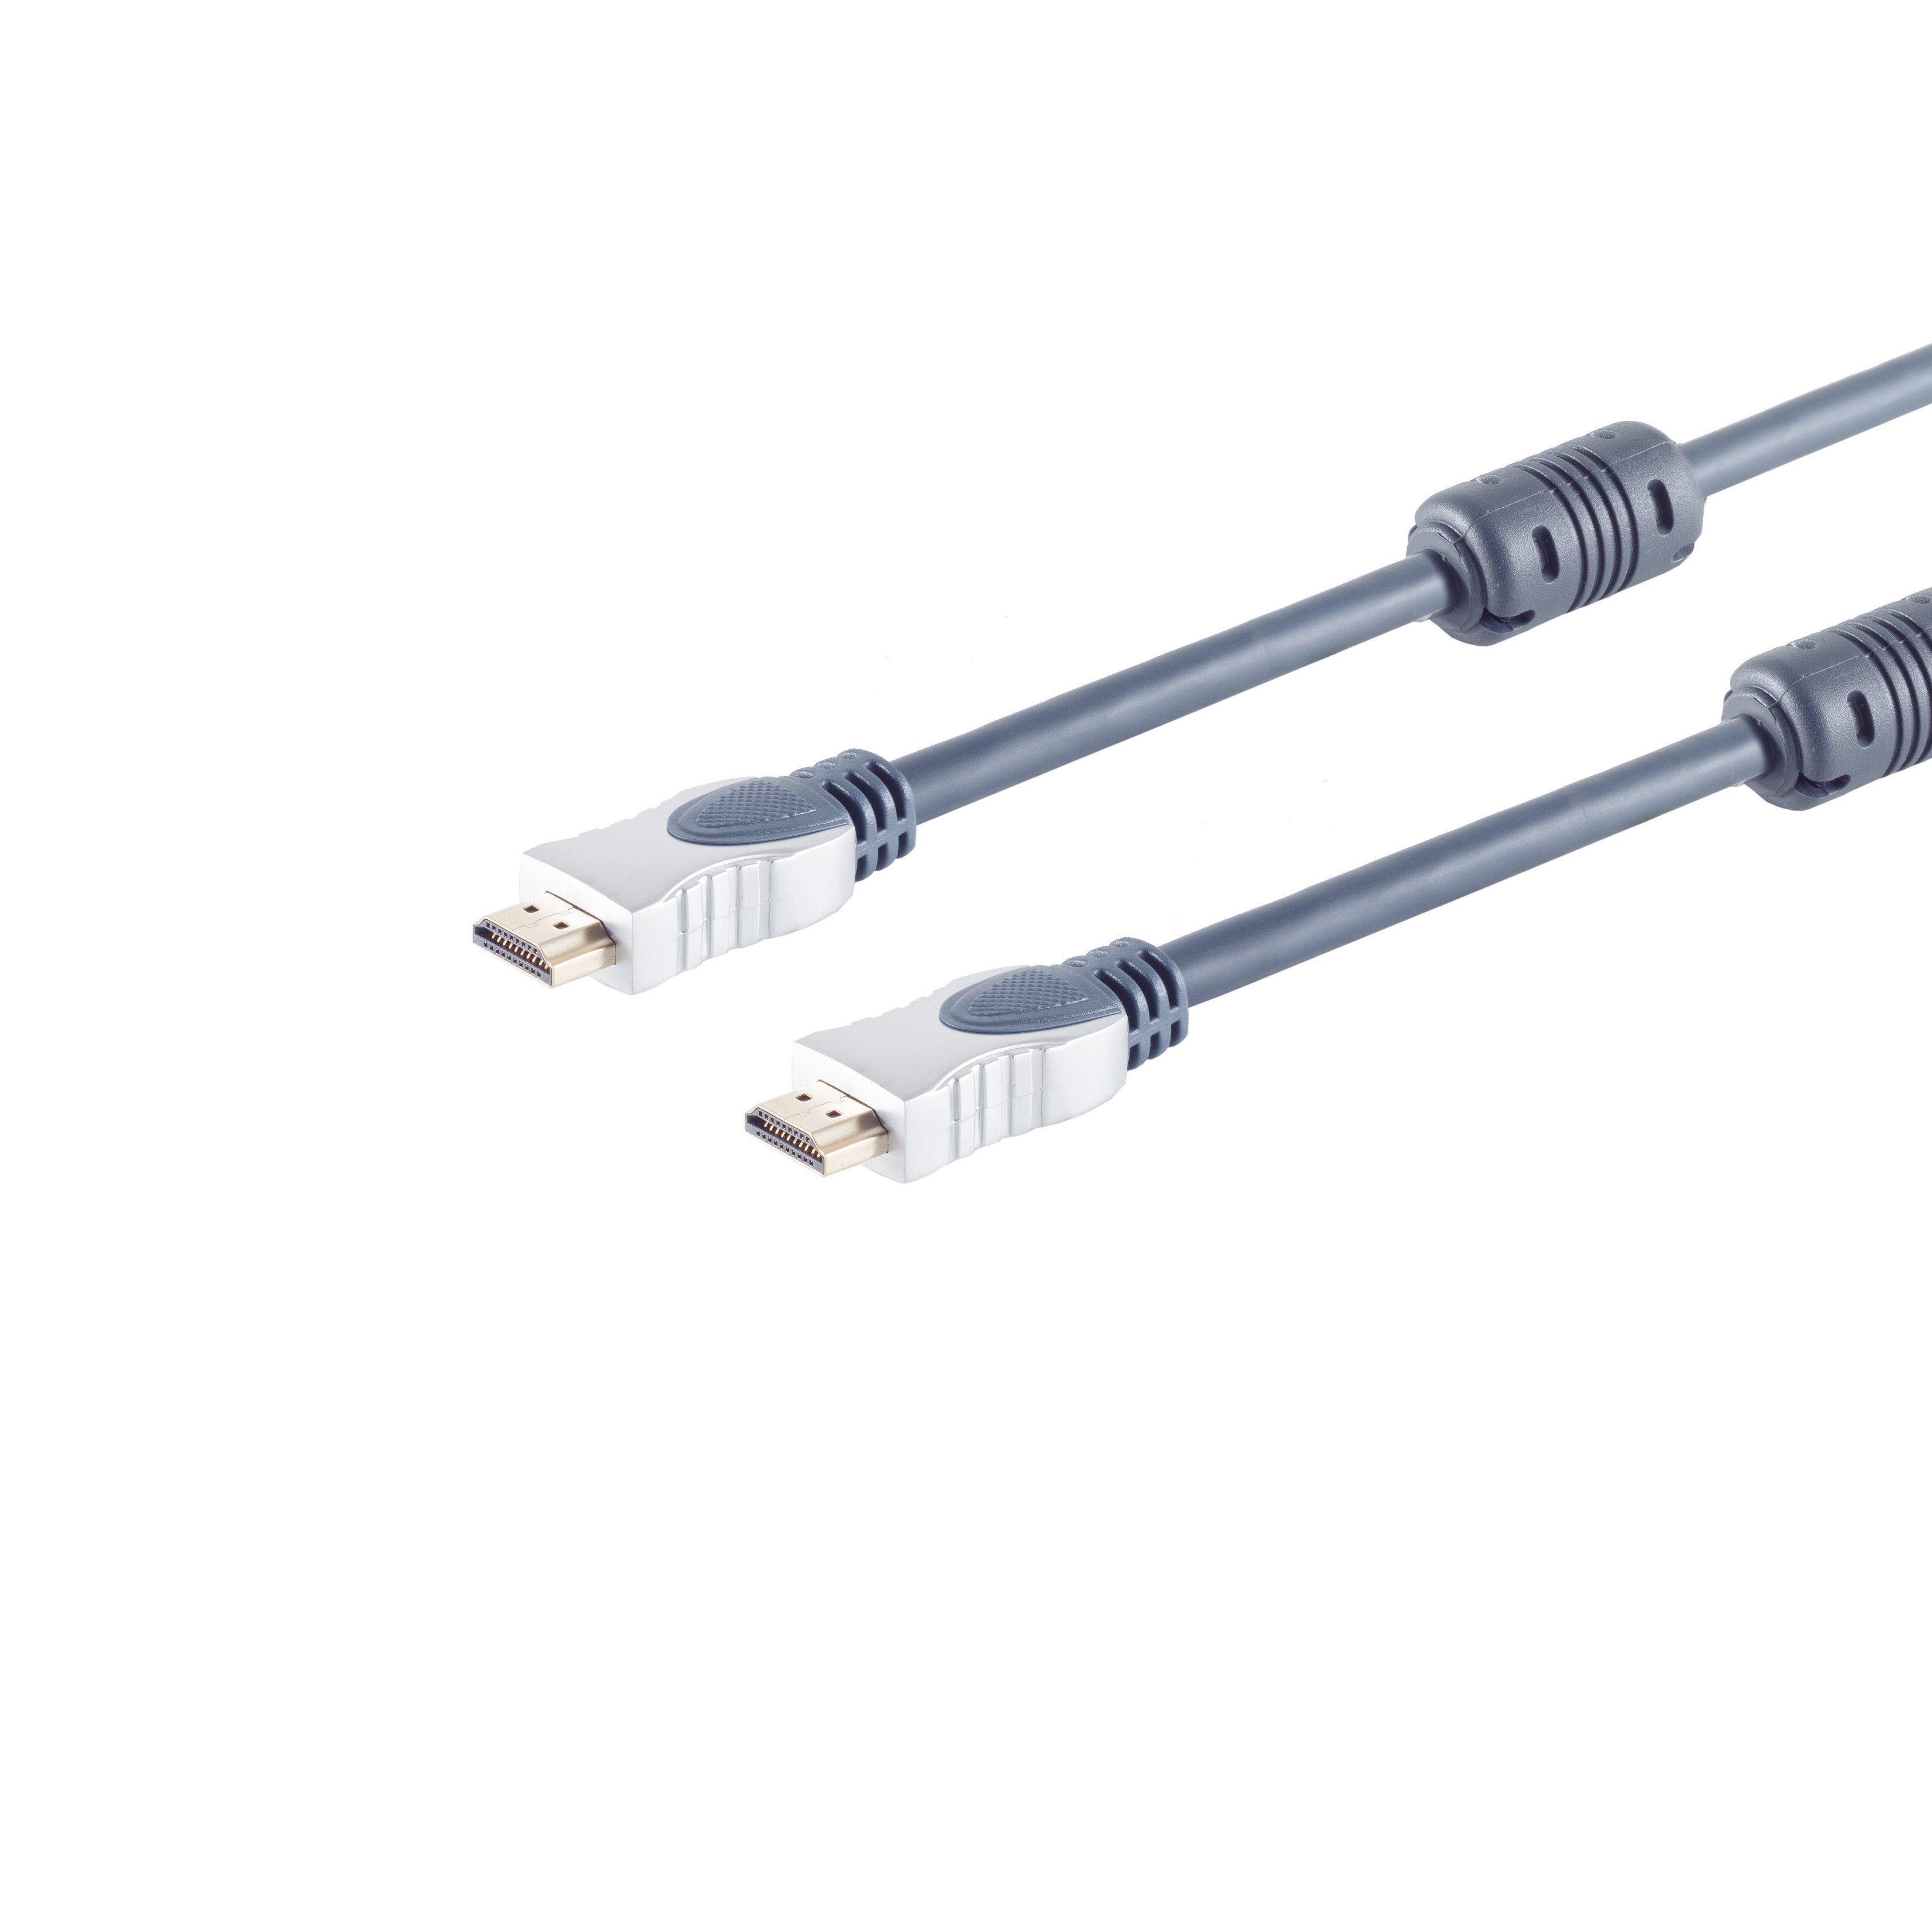 MAXIMUM Home-Cinema Stecker, HDMI Kabel HDMI 20,0m S/CONN CONNECTIVITY 2x